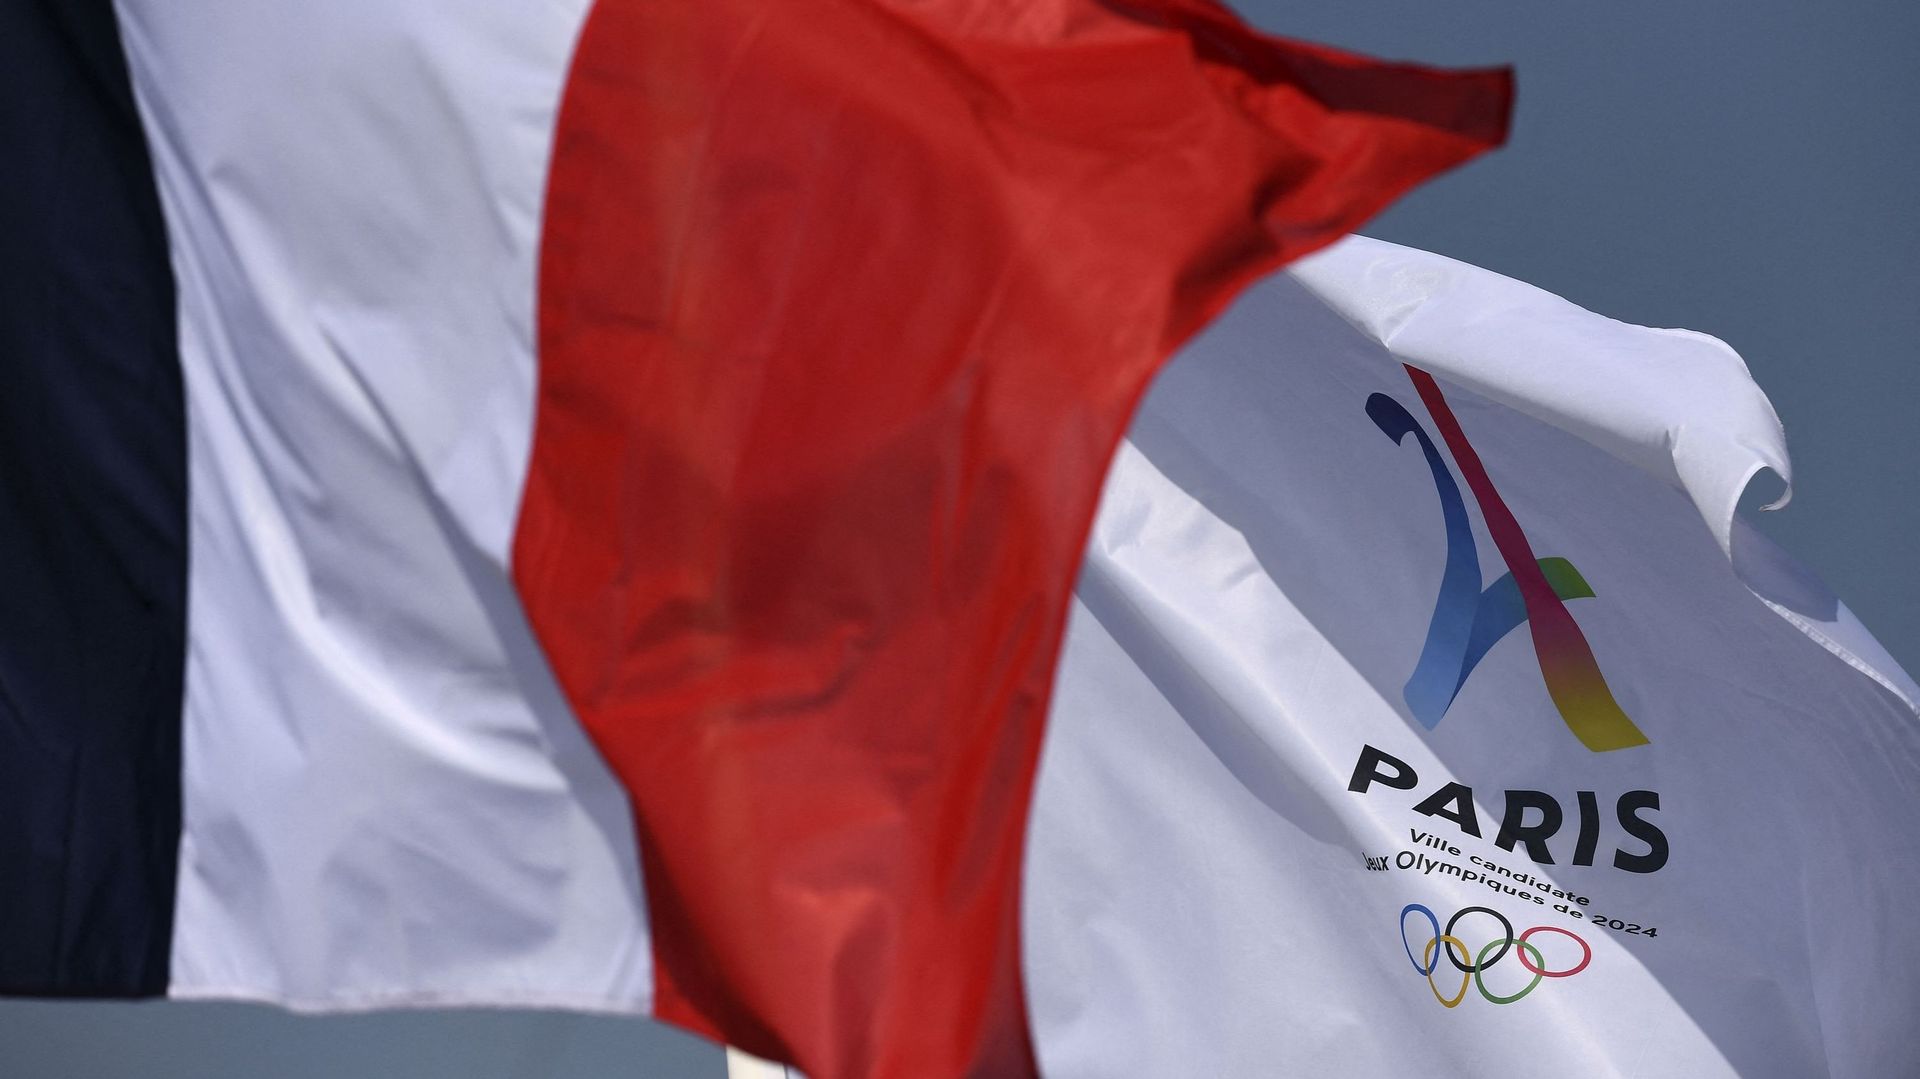 Une coalition d’une trentaine de pays a demandé au CIO des "clarifications" sur la neutralité exigée pour les sportifs russes et biélorusses conditionnant leur participation aux JO de Paris en 2024, dans une lettre adressée lundi à l’instance olympique.